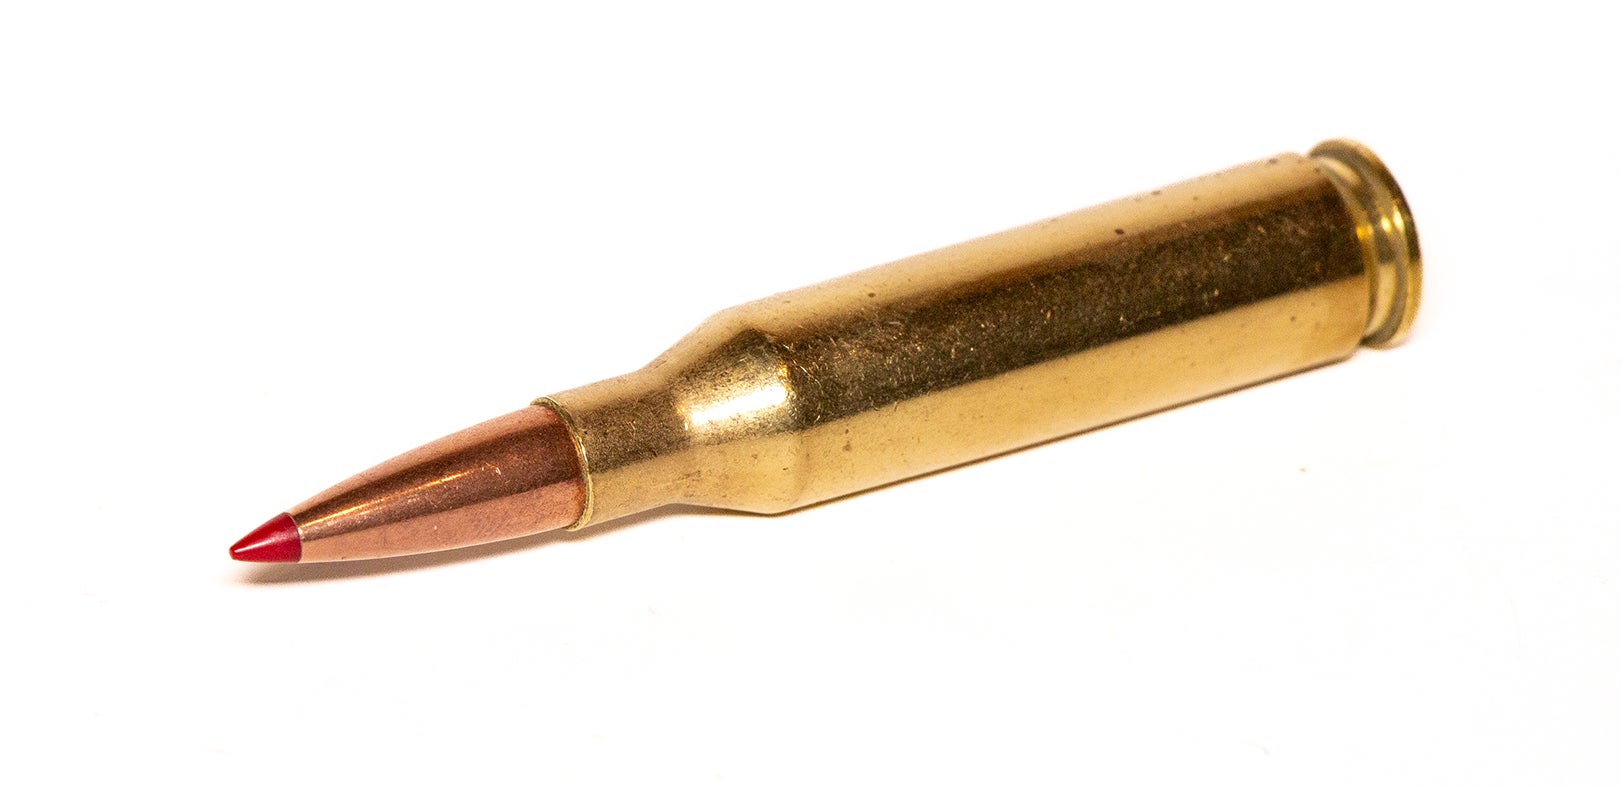 A 260 Remington cartridge on a white backgound